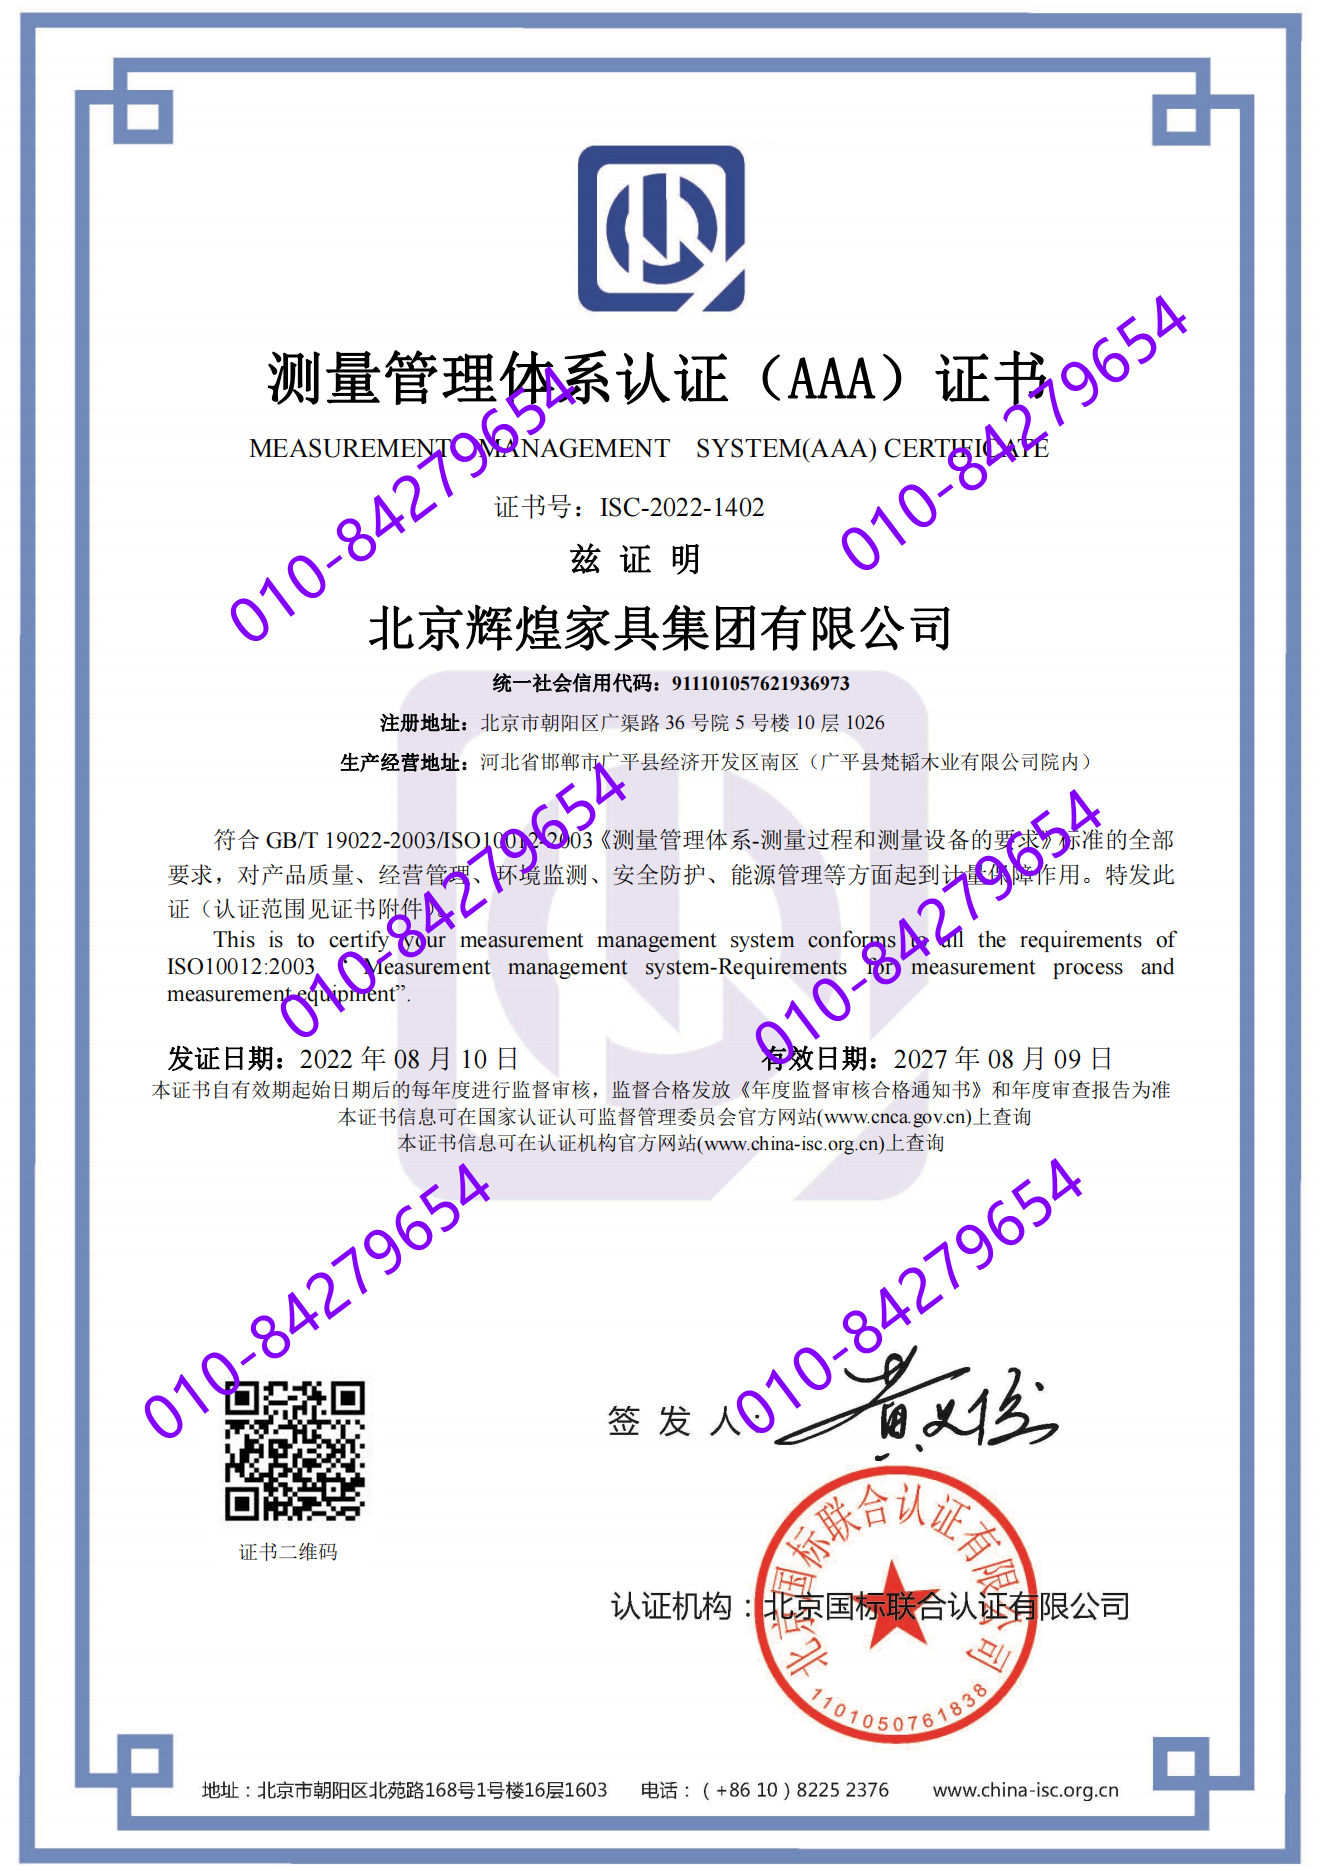 北京辉煌家具集团有限公司 喜获“测量管理体系认证（AAA）证书”